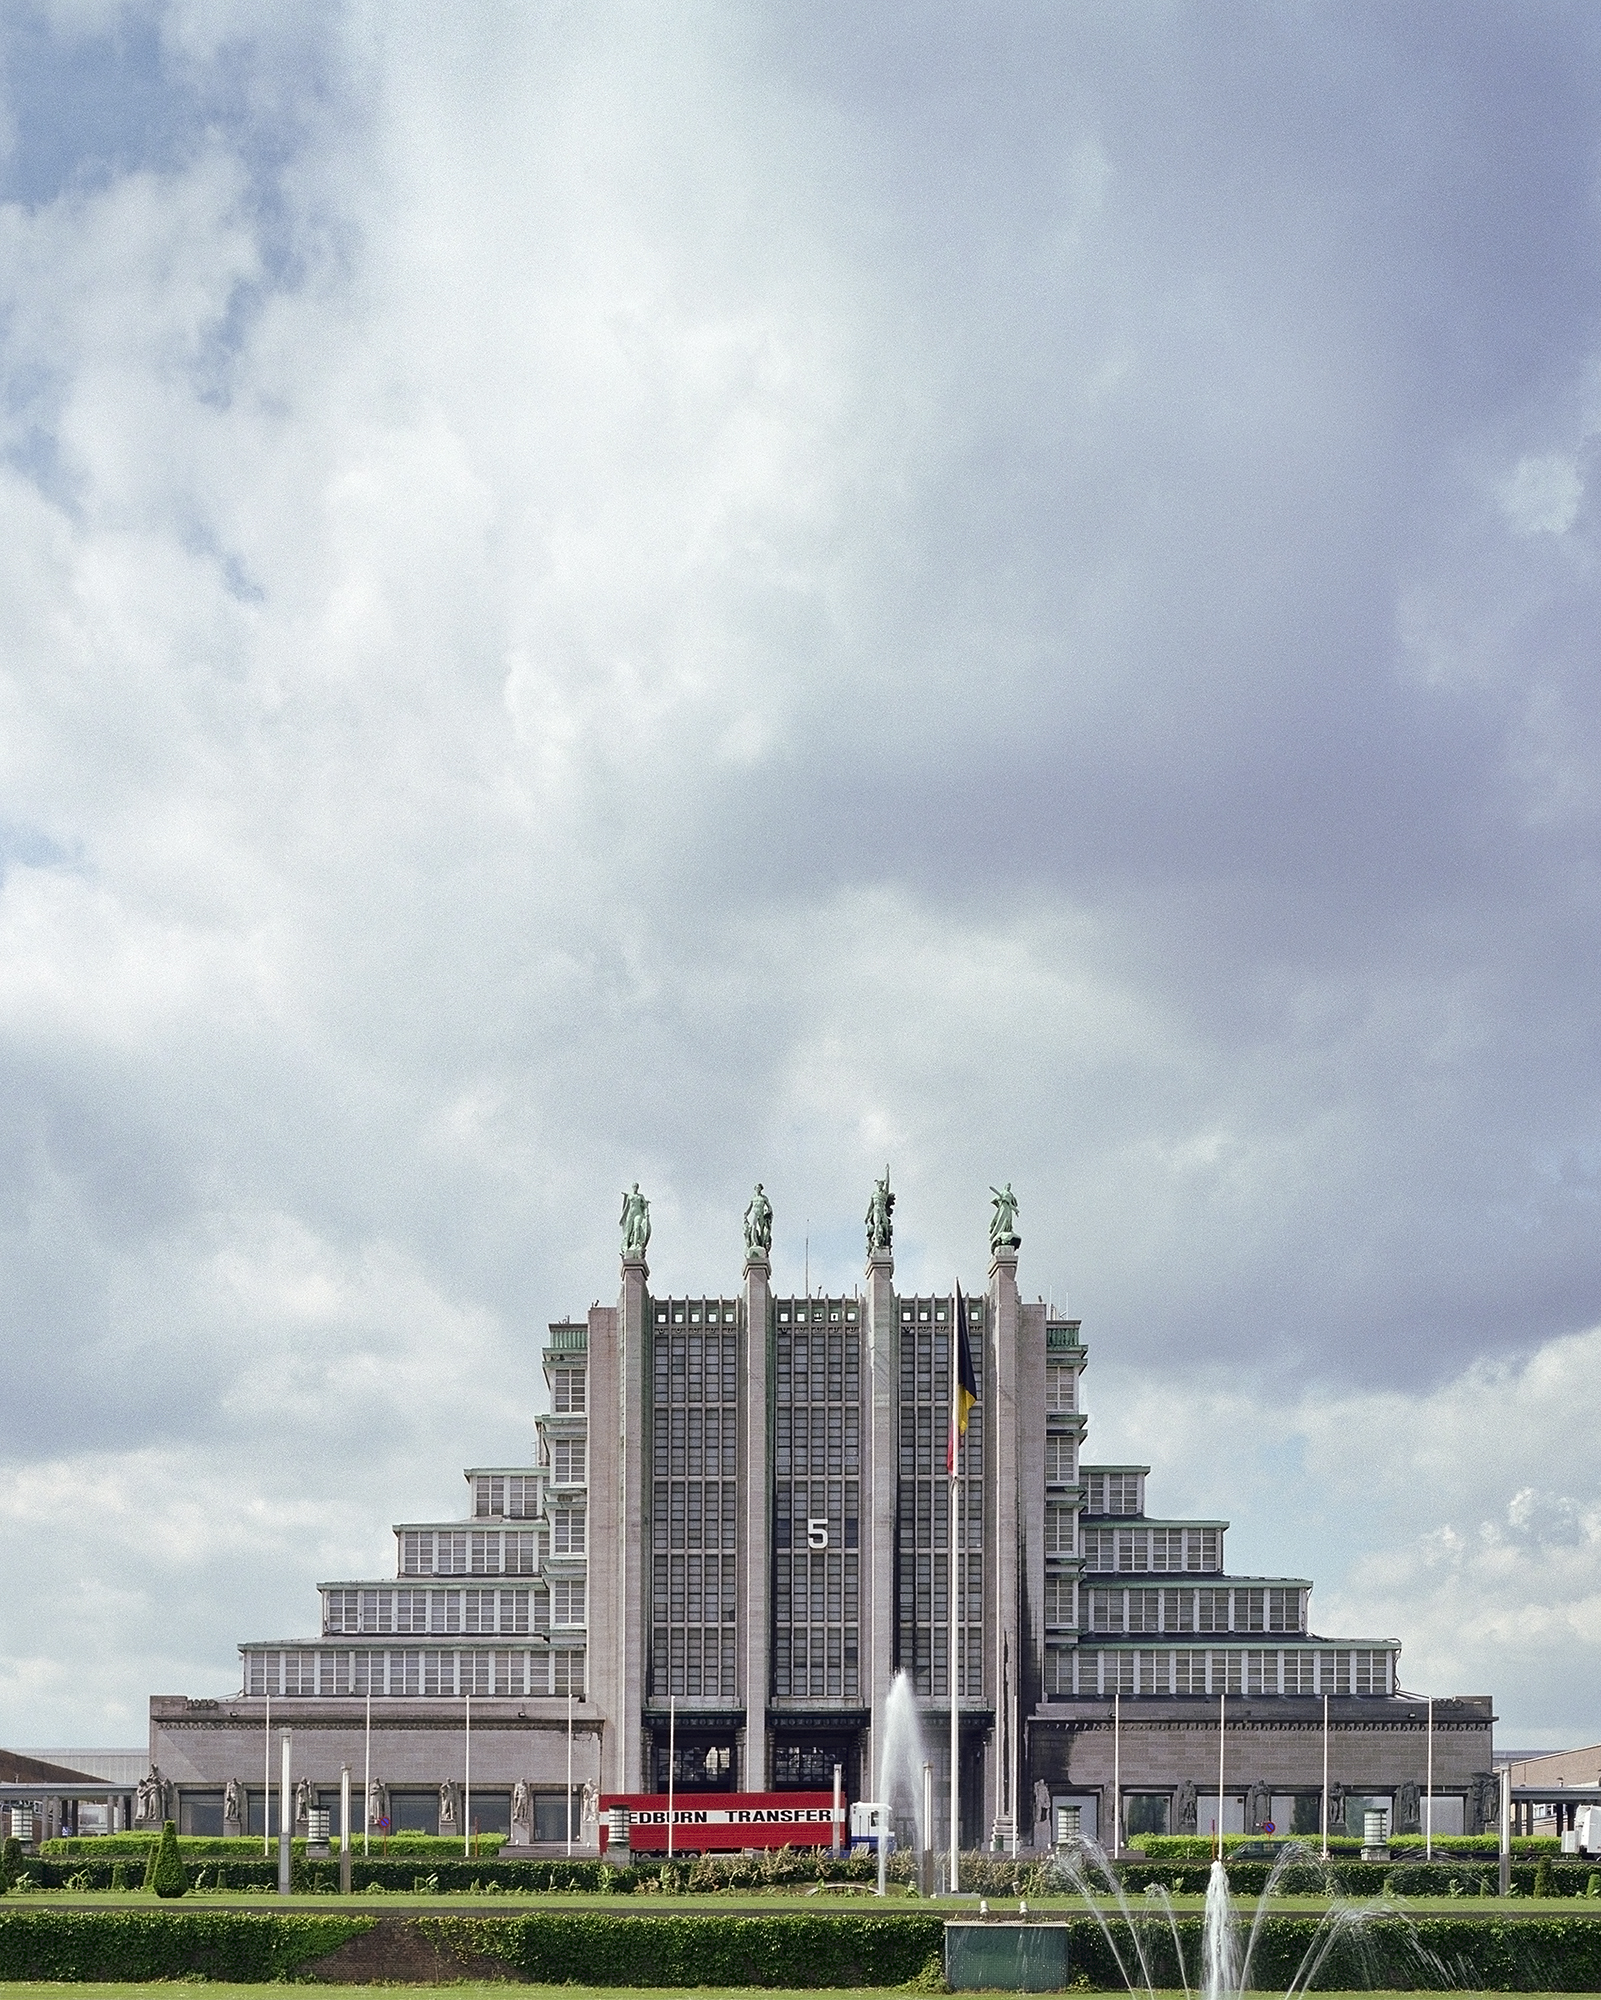 &laquo;Большой дворец&raquo; в Брюсселе до сих пор остается символом &laquo;Экспо-35&raquo;. Сегодня это один из самых больших выставочных центров в Бельгии. В 2013 году он был преобразован в концертную площадку.

Здание включает в себя 12 павильонов с общей выставочной площадью в 115 тыс. кв. м. Ежегодно там проводится множество мероприятий, включая международную транспортную выставку European Motor Show.
